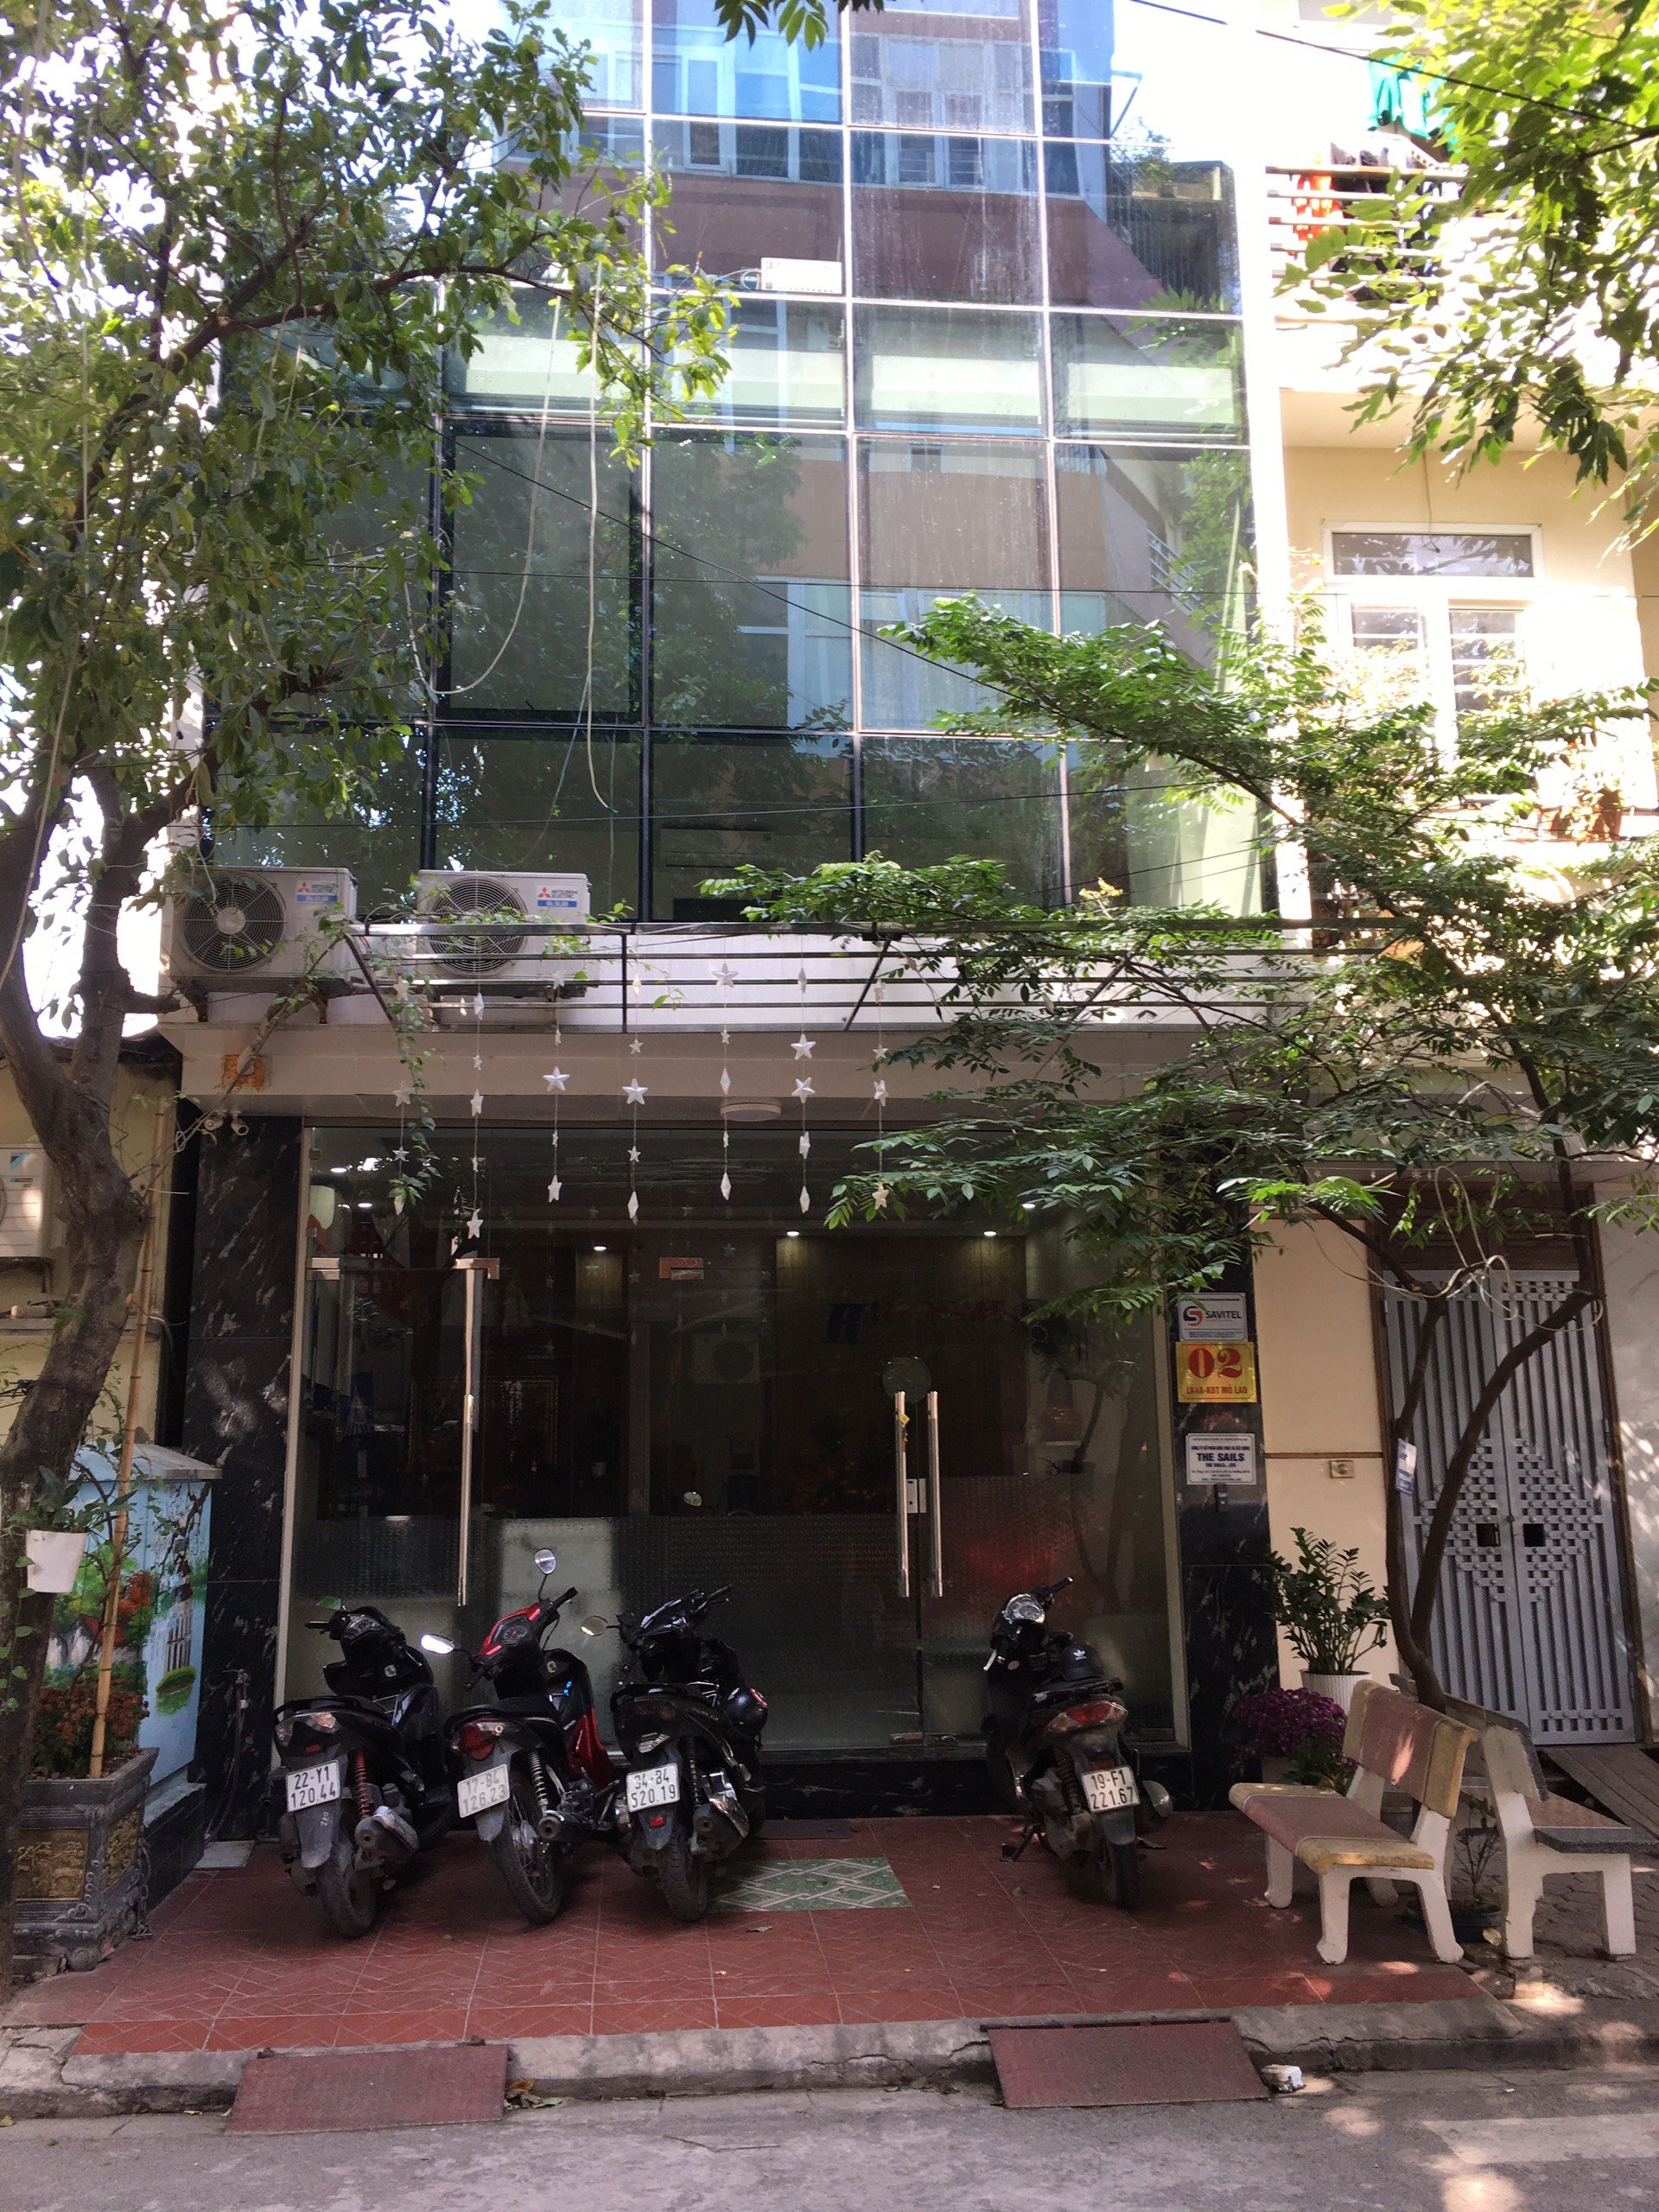 Cho thuê văn phòng đường Nguyễn Văn Lộc, có chỗ để ô tô, bãi gửi xe máy, điều hòa, 1 phòng + thông sàn 2